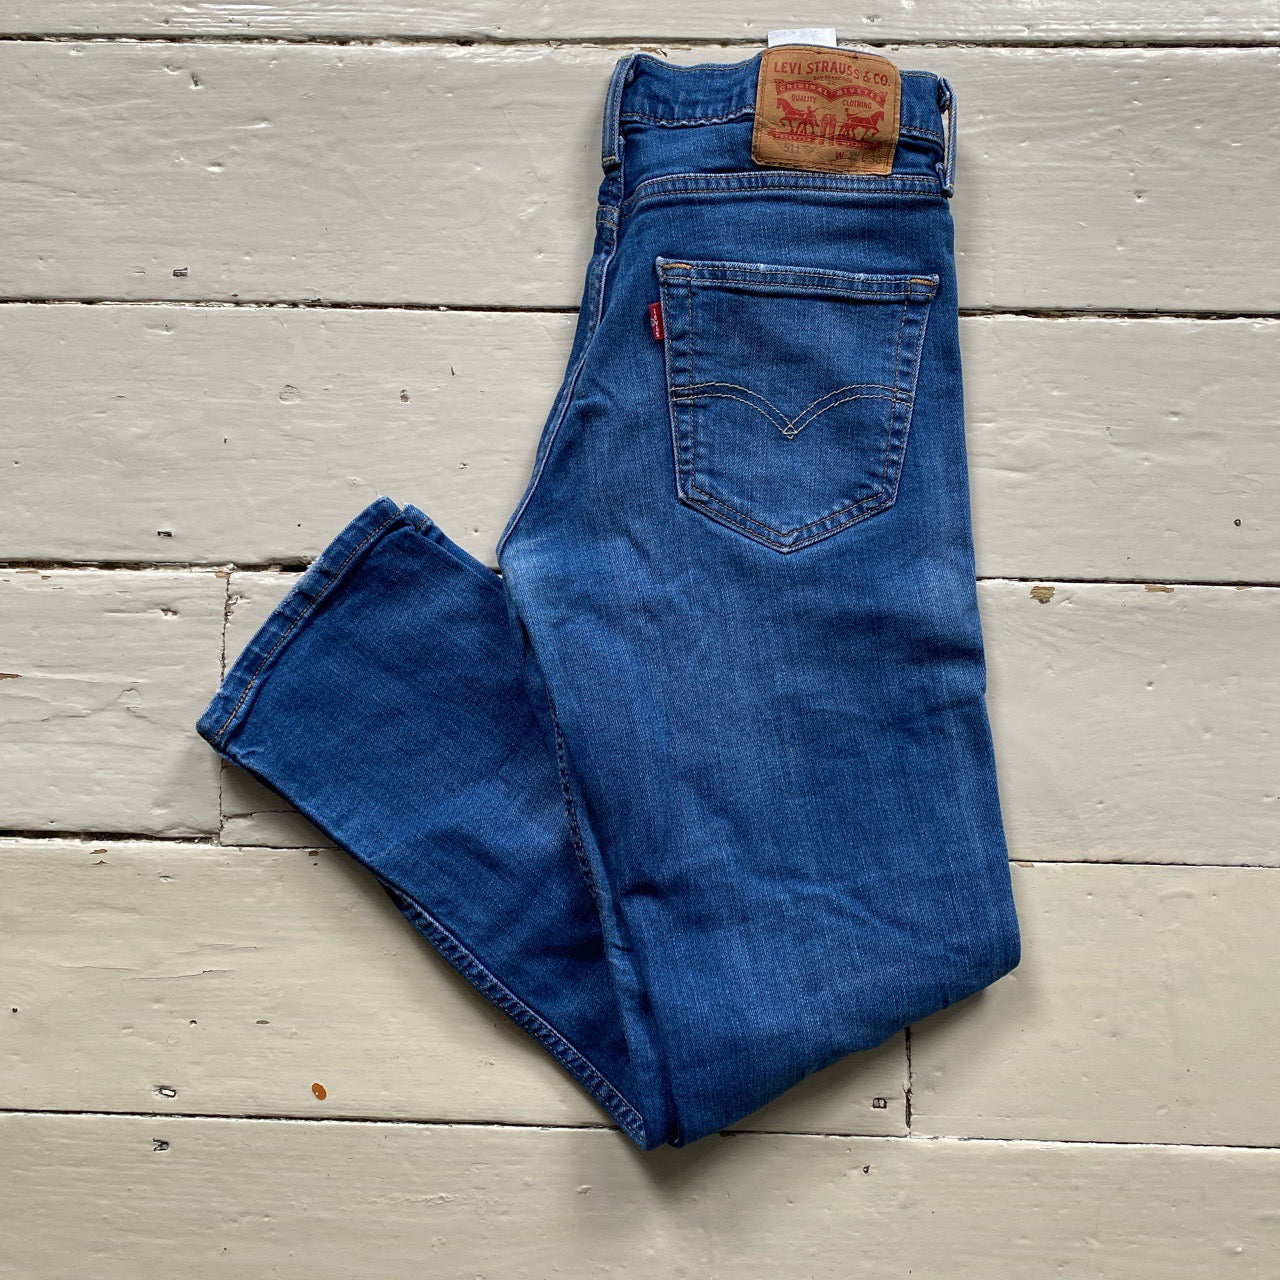 Levis 511 Slim Jeans Blue (32/28)